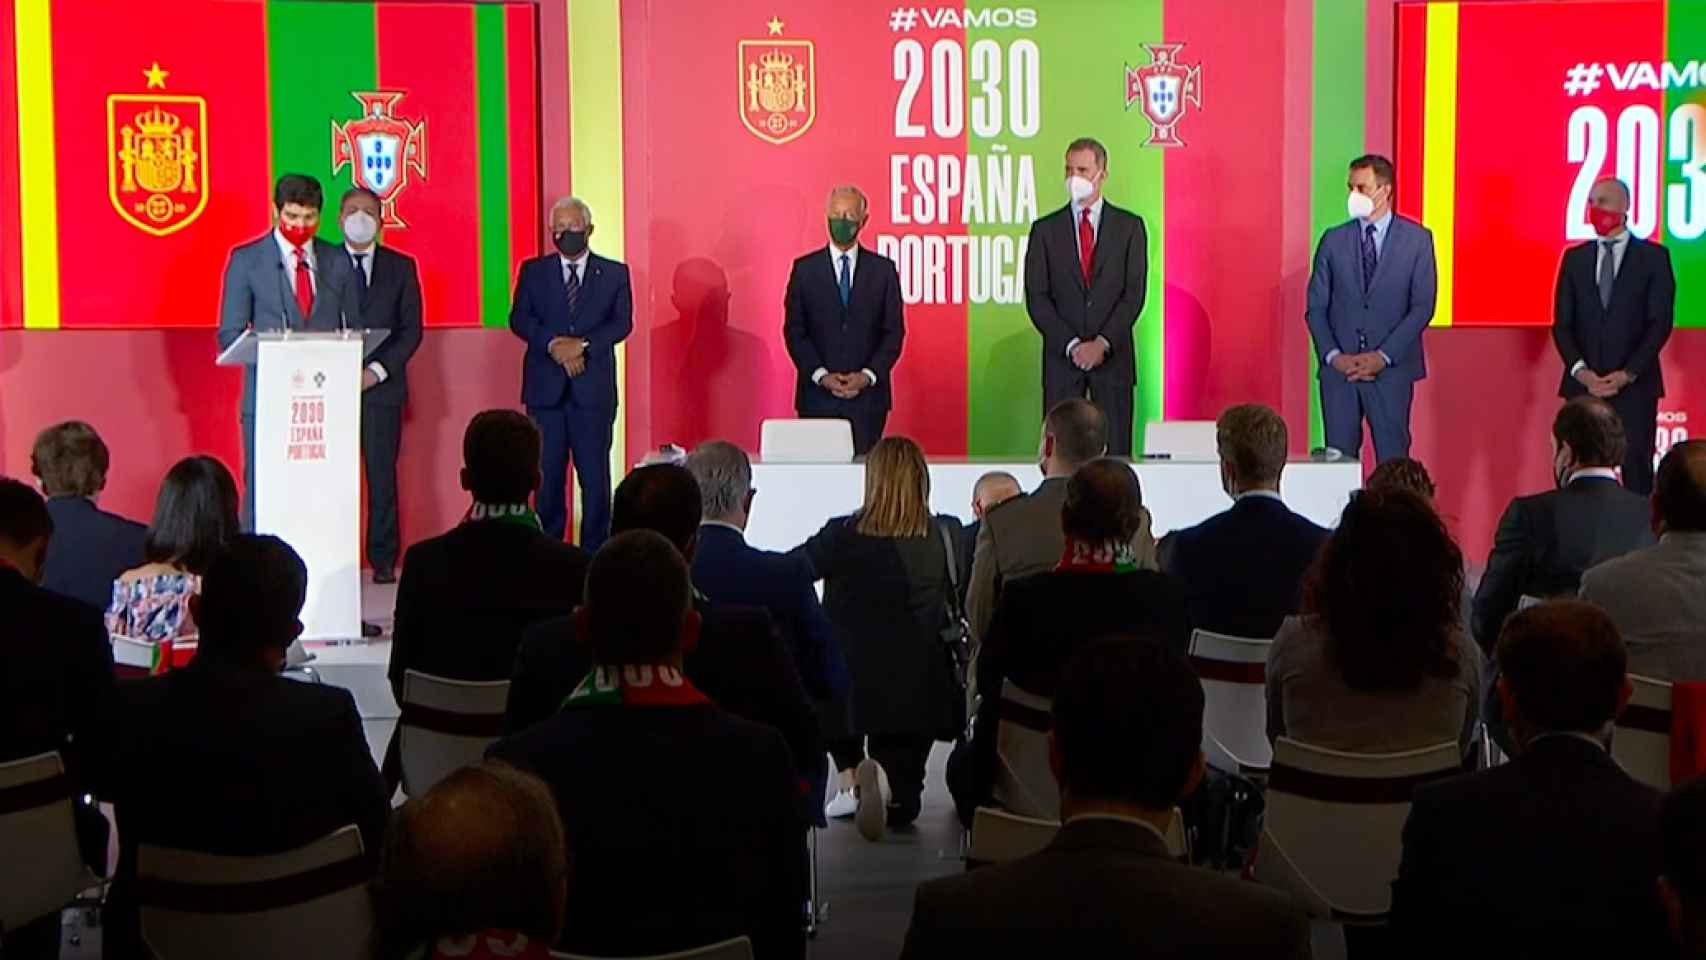 Acto de presentación de la candidatura del Mundial 2030 entre España y Portugal